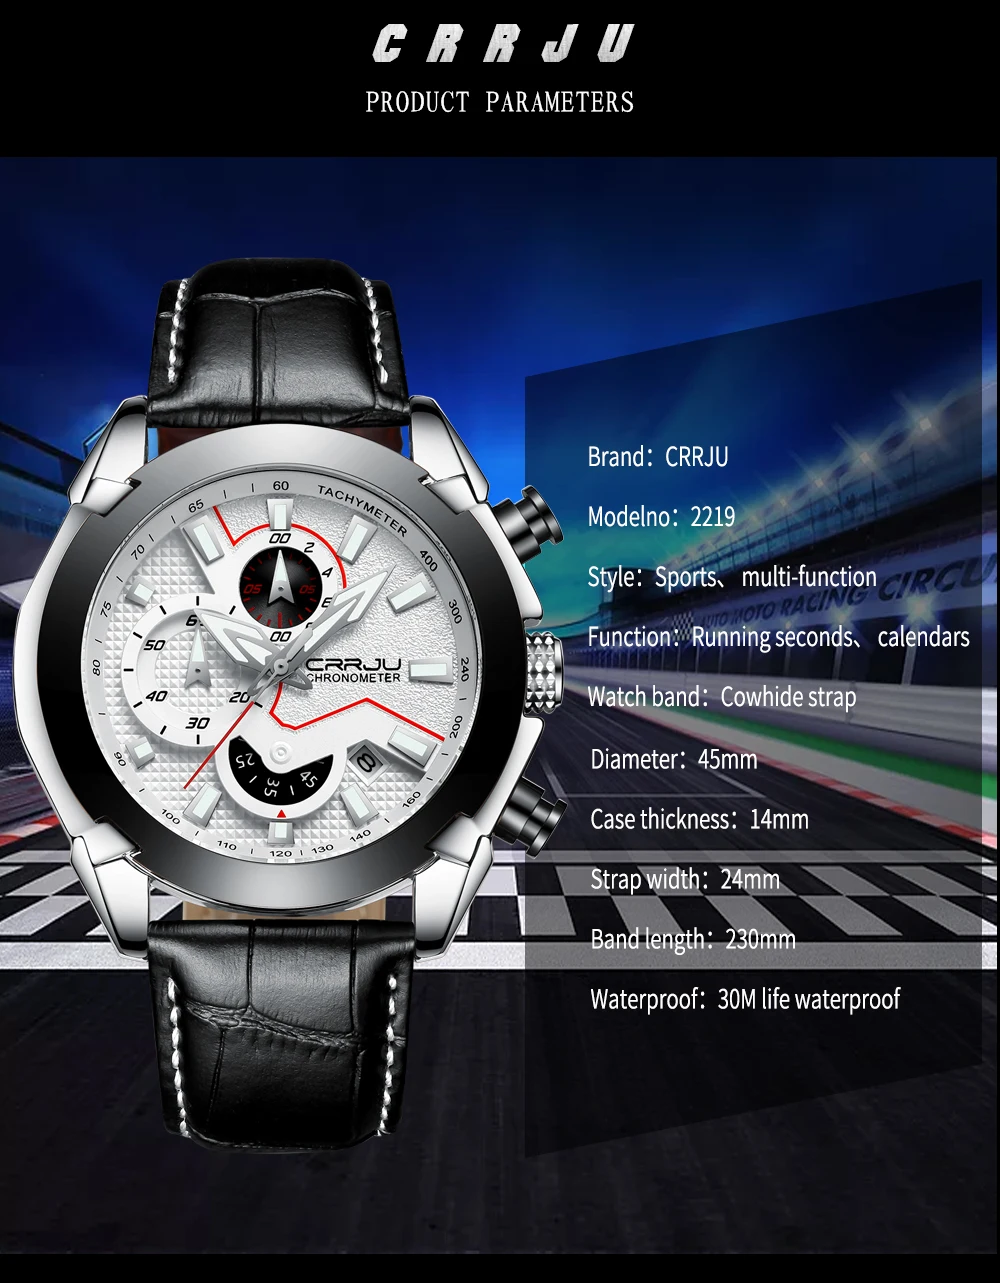 Часы Для мужчин Элитный бренд CRRJU Повседневное Хронограф Спортивные Для мужчин s часы Водонепроницаемый кварцевые Для мужчин смотреть Relogio